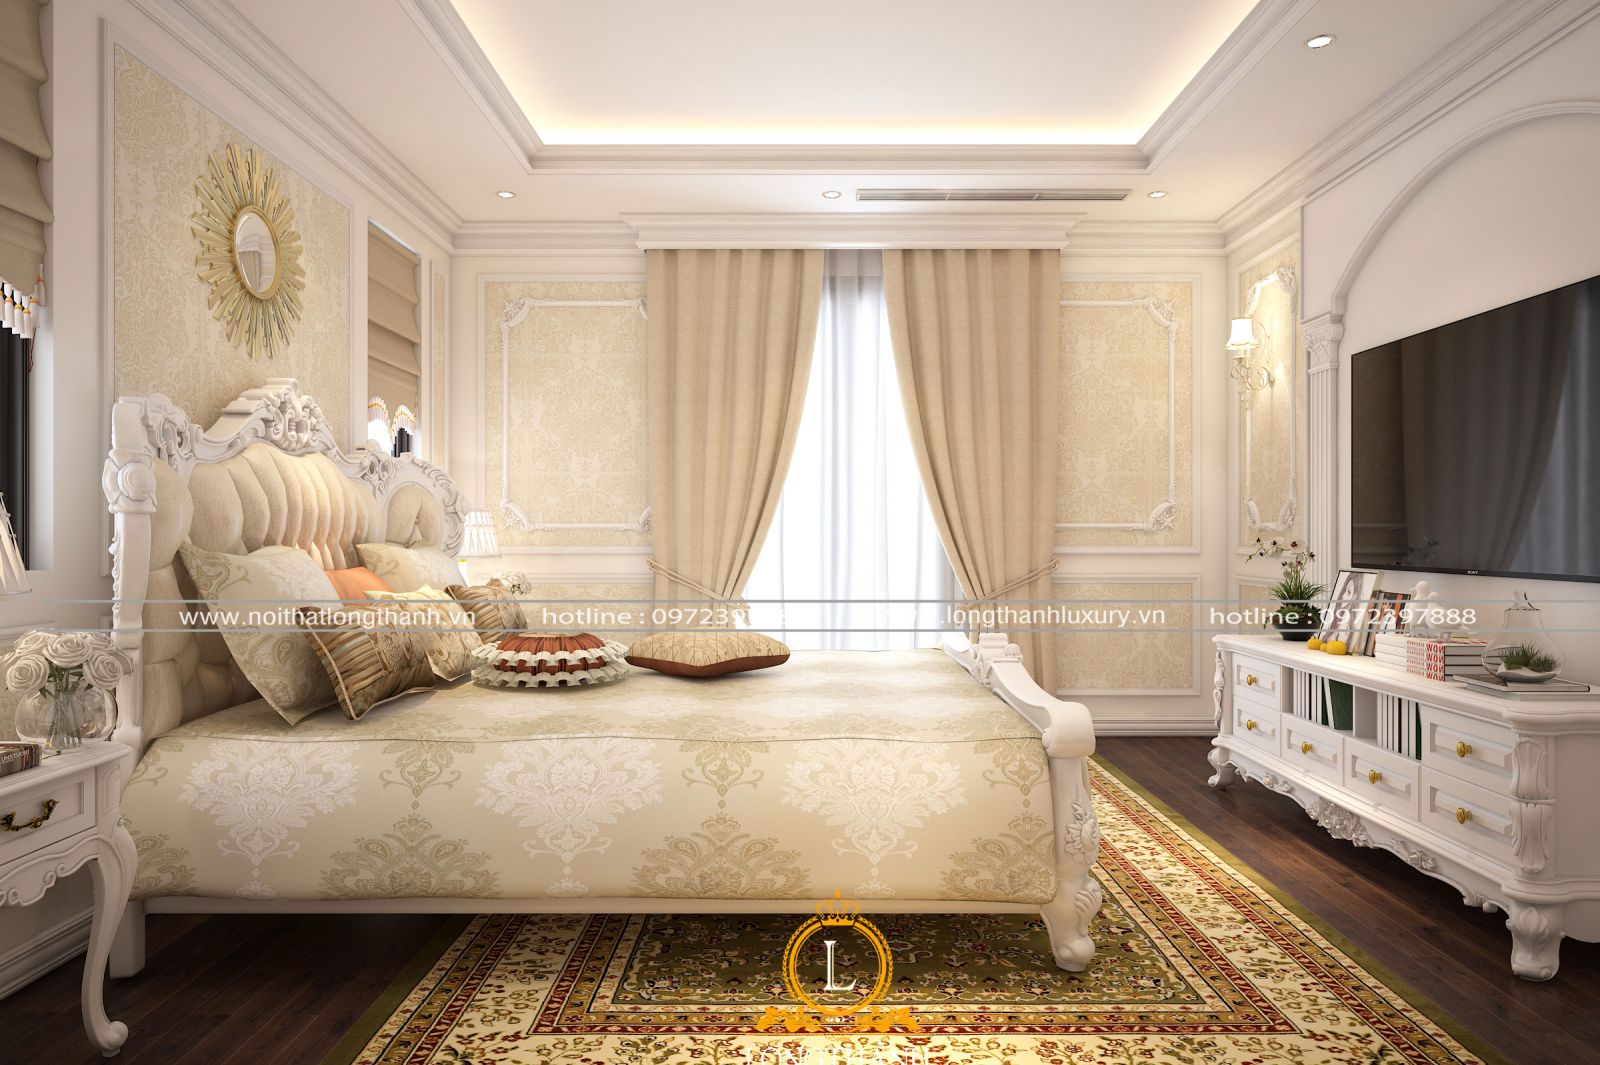 Căn phòng ngủ màu trắng sữa được thiết kế đồ nội thất và trang trí không gian cân xứng